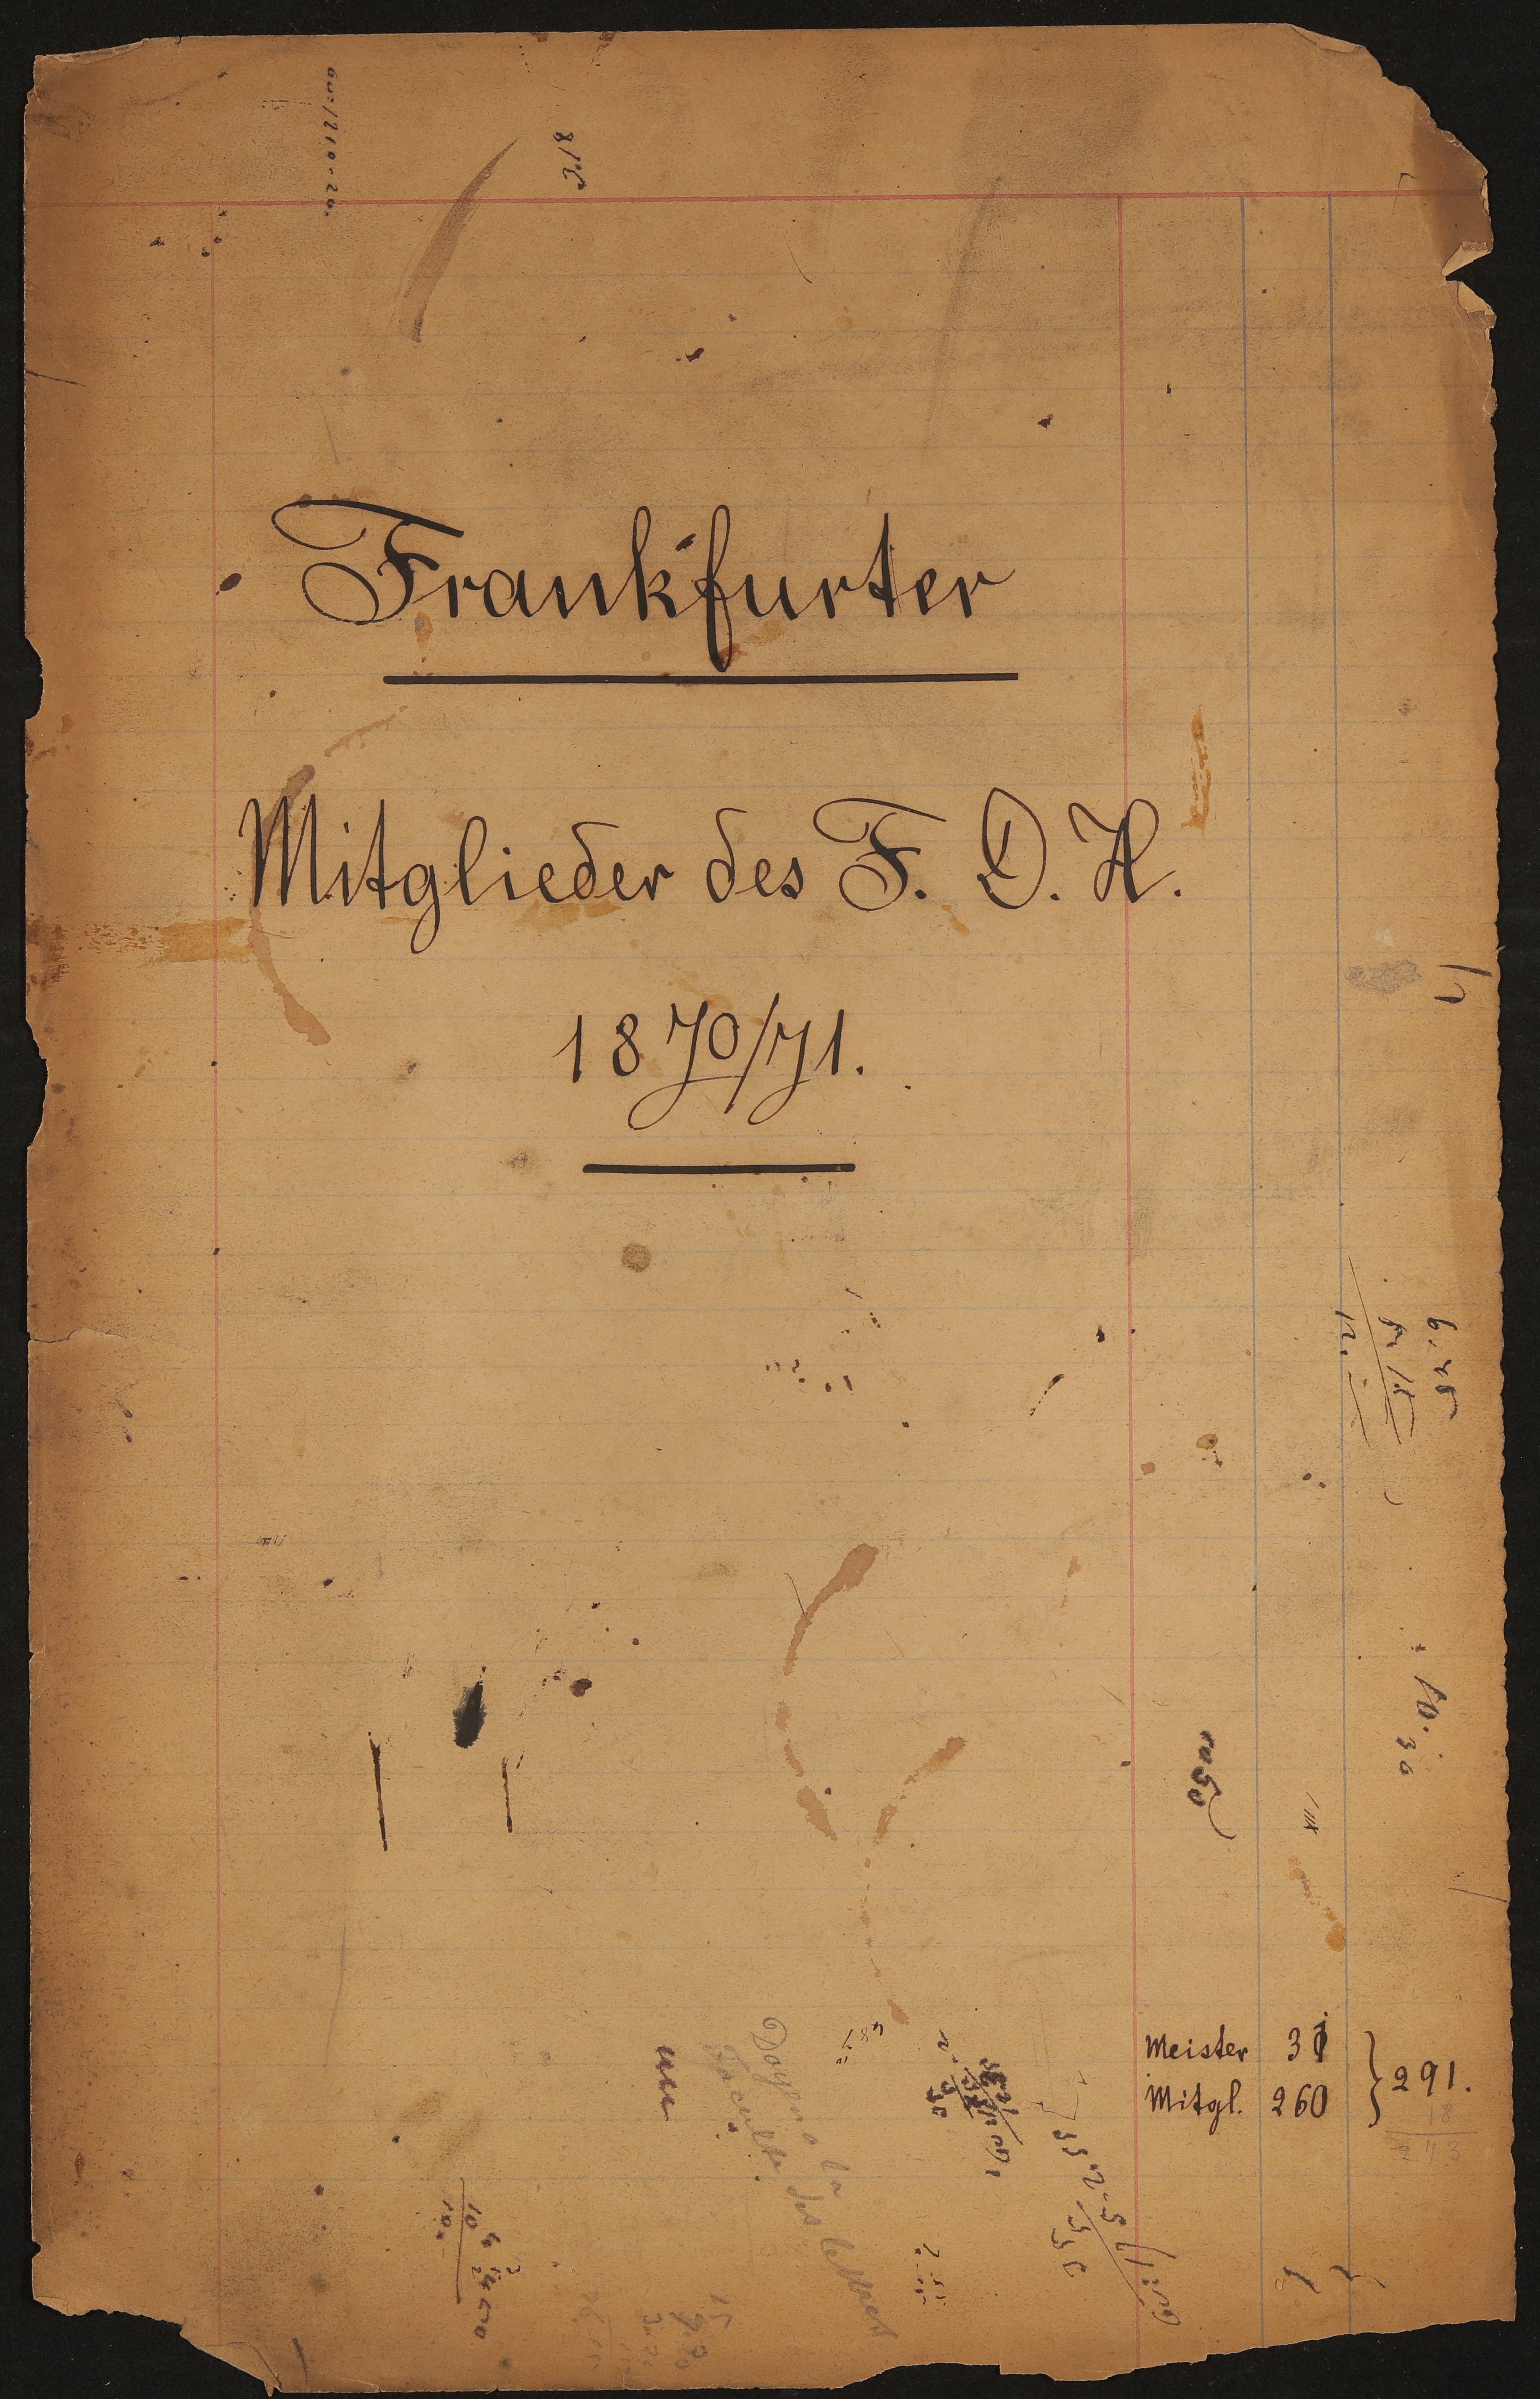 Frankfurter Mitglieder des Freien Deutschen Hochstifts 1870/71 (Freies Deutsches Hochstift / Frankfurter Goethe-Museum Public Domain Mark)